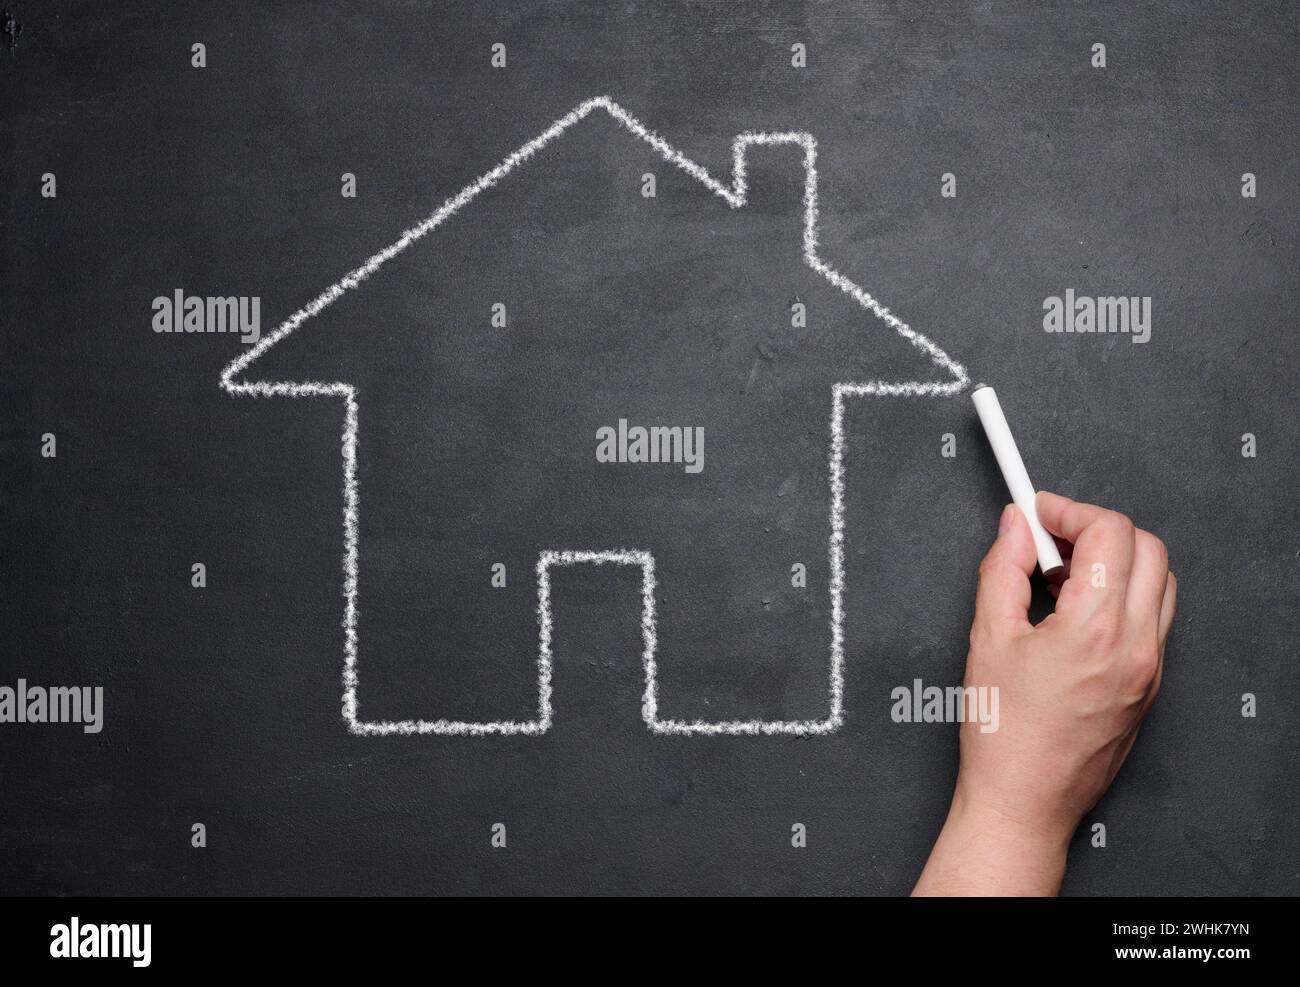 Una mano femenina dibujada con tiza en una pizarra una casa en miniatura, concepto de alquiler, hipoteca Foto de stock